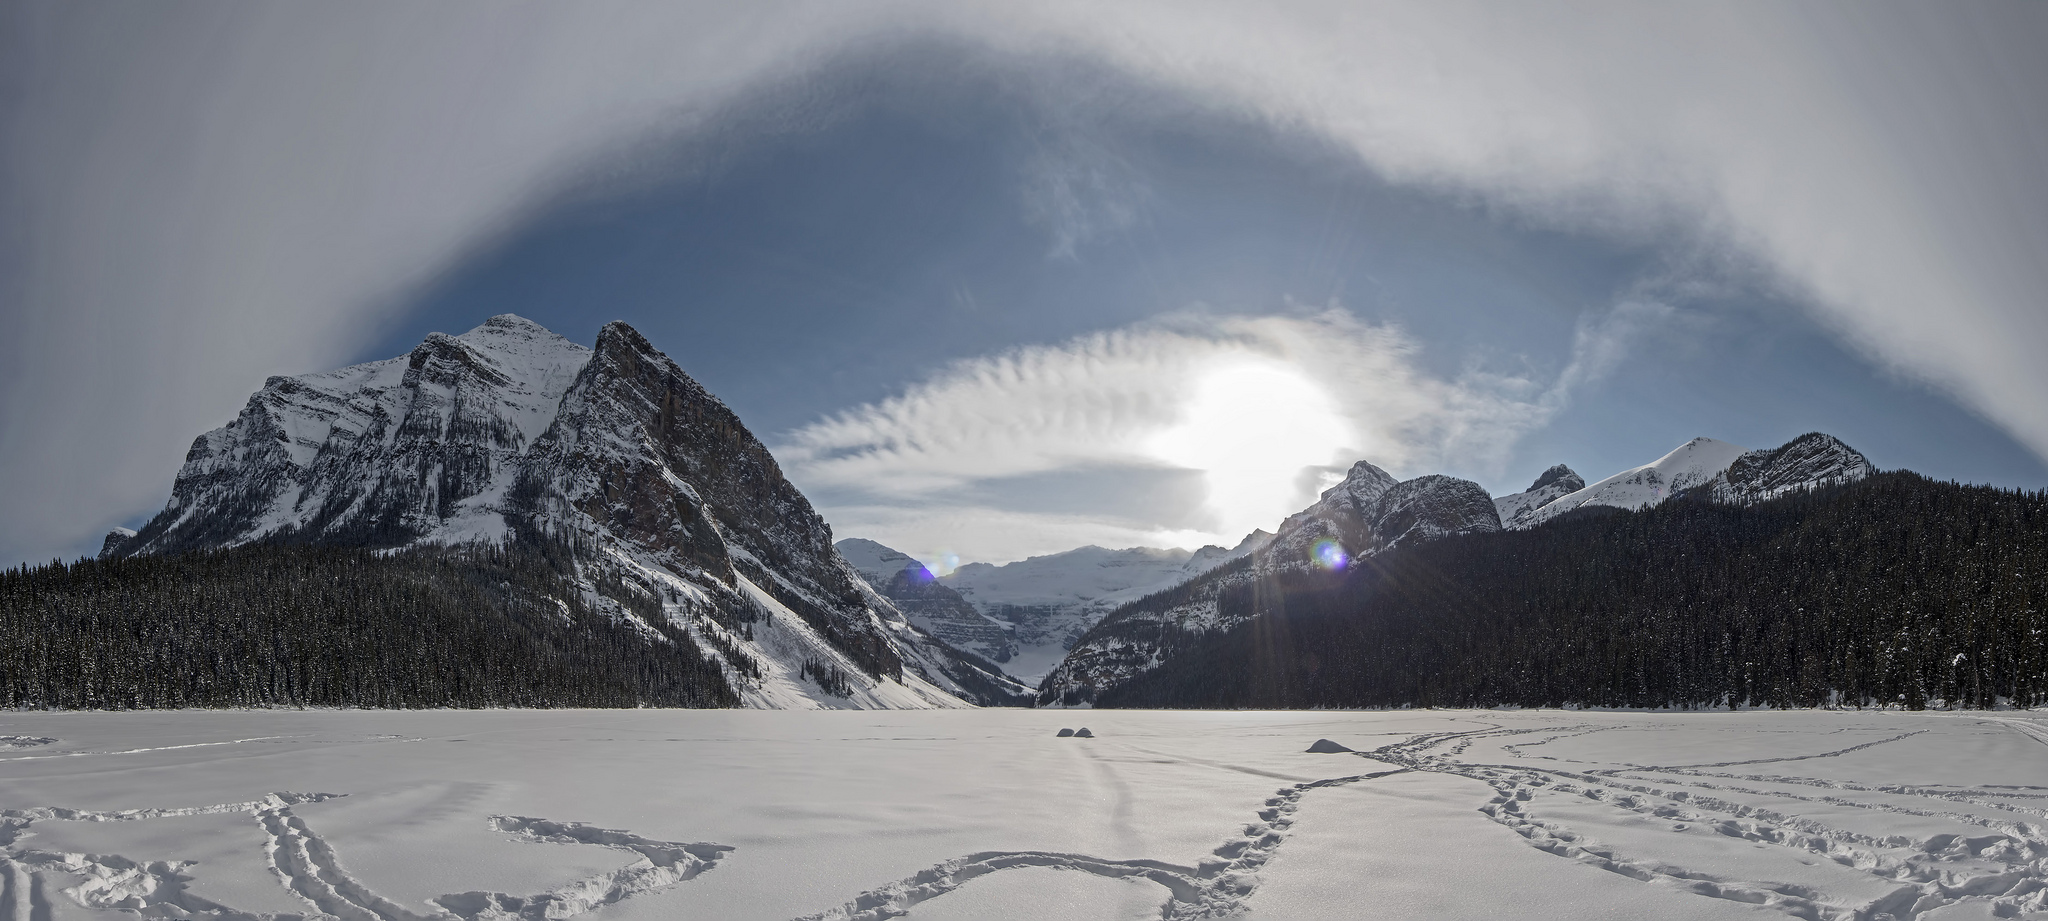 IIn de Canadese Rocky Moutains zijn de nationale parken gelegen: Banff, Jasper en de Kootenays. Dit zijn beschermende gebieden